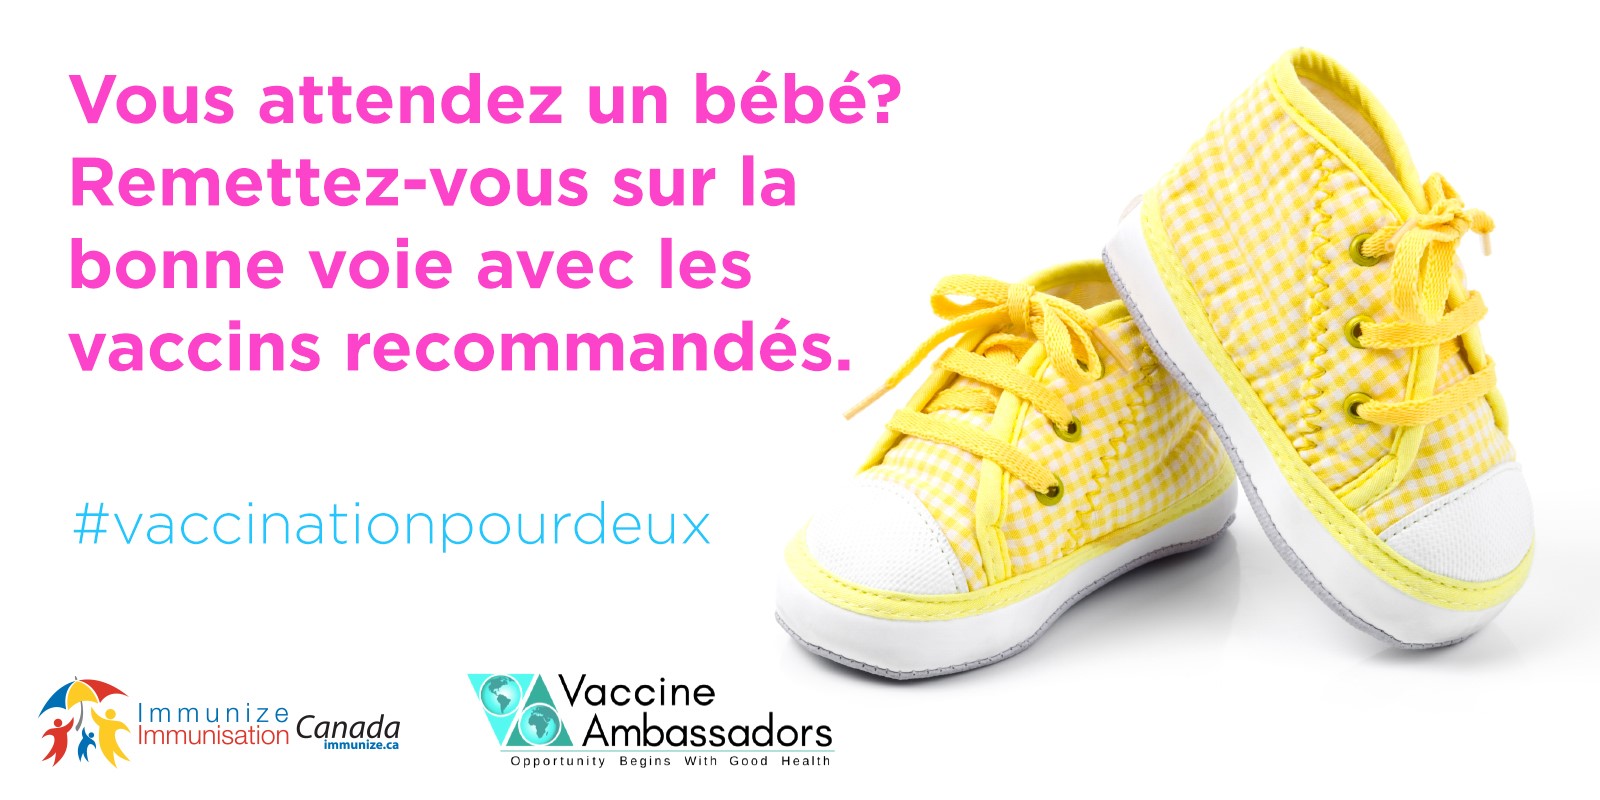 Vous attendez un bébé? Remettez-vous sur la bonne voie avec les vaccins recommandés.